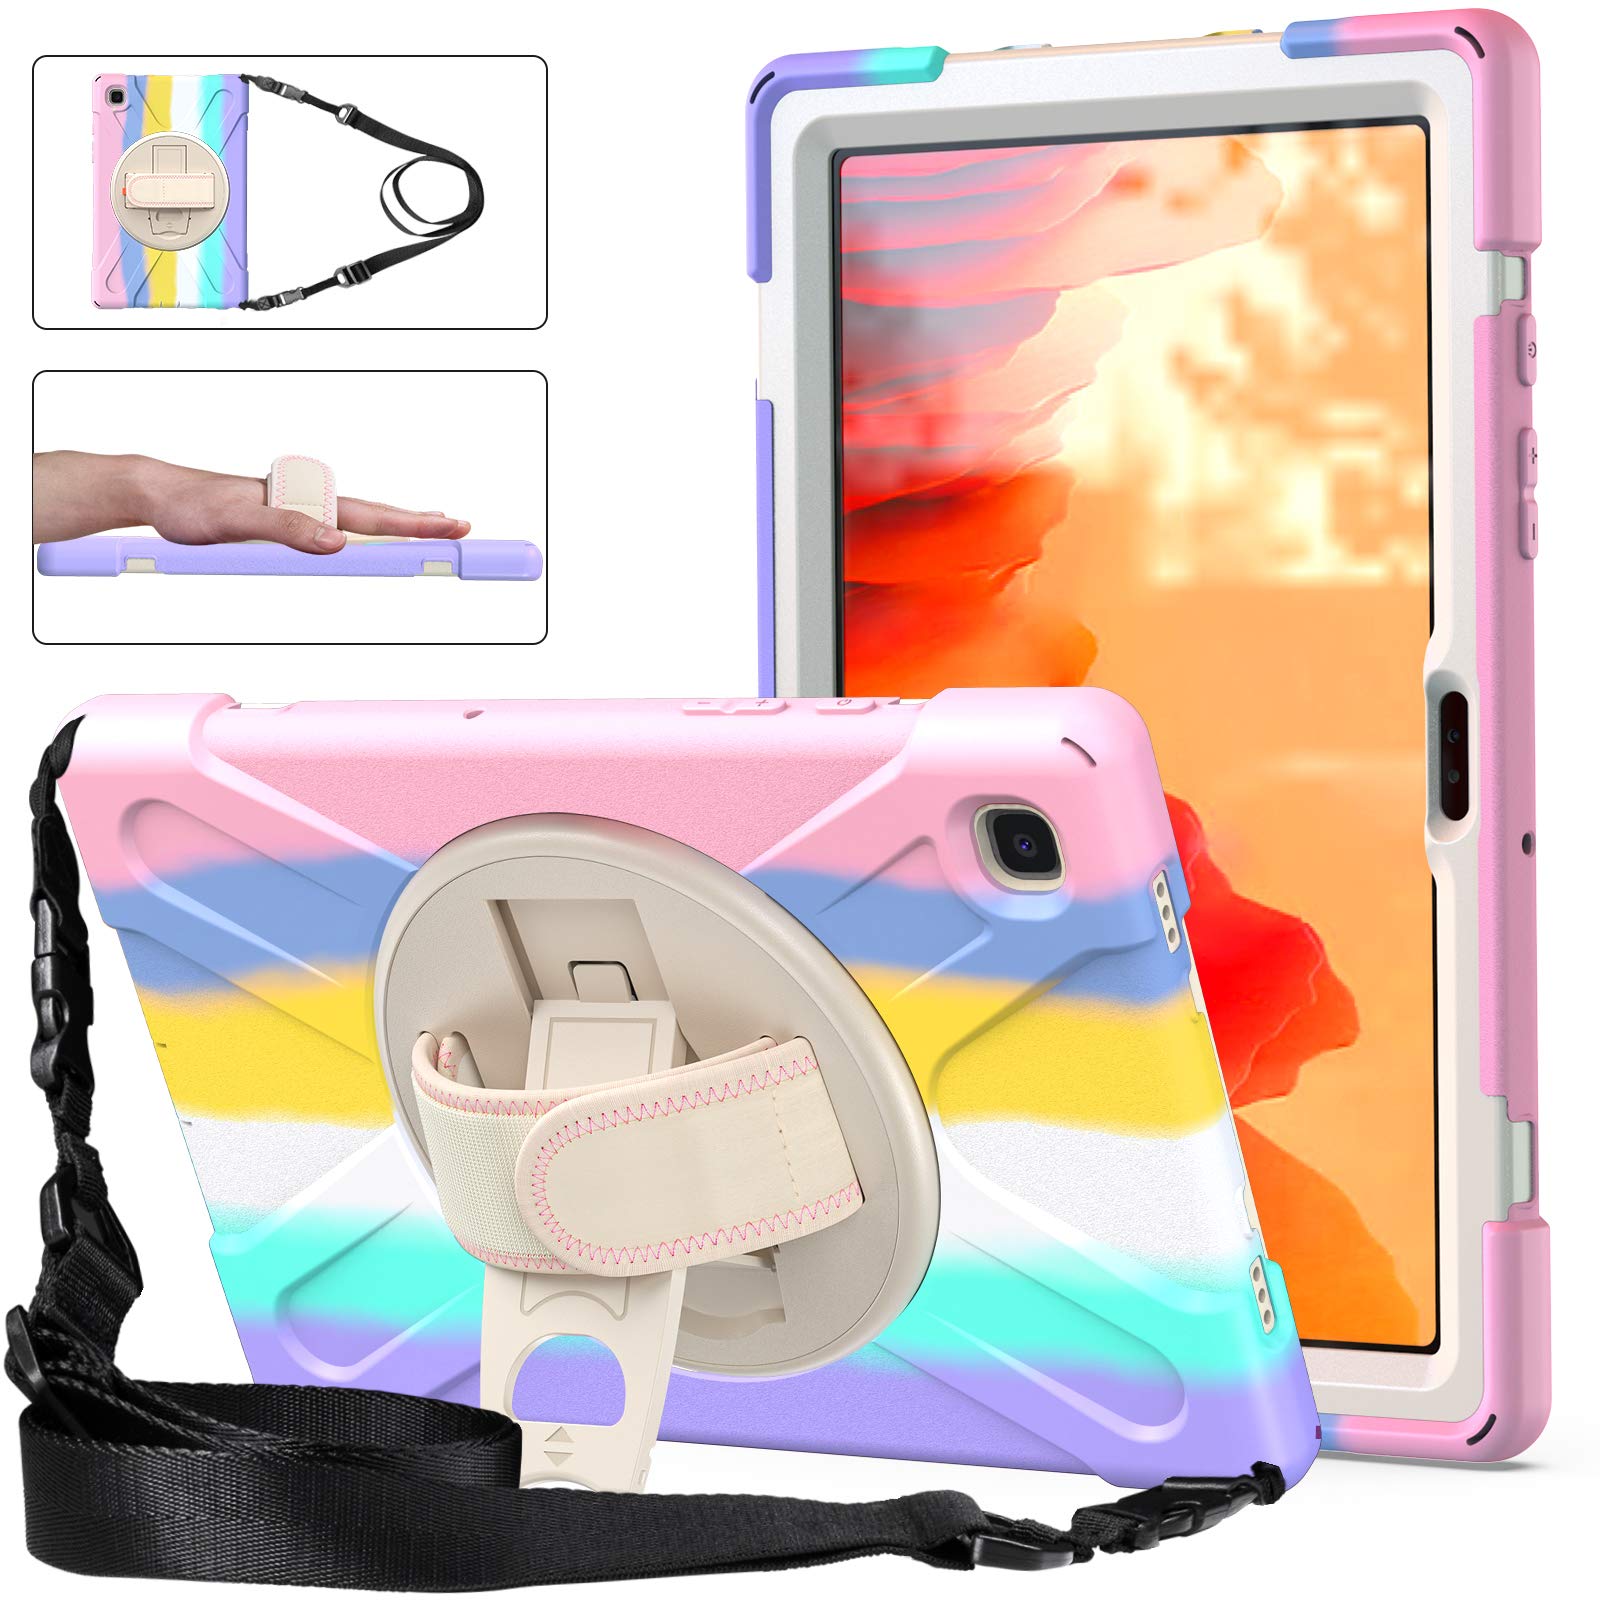 YGoal Hülle für iPad Pro 12.9 2021 - [Handschlaufe] [Schultergurt] Robuste Schutzhülle mit Fallschutz und 360-Grad-Drehständer Case Cover für iPad Pro 12.9 2021, MRose